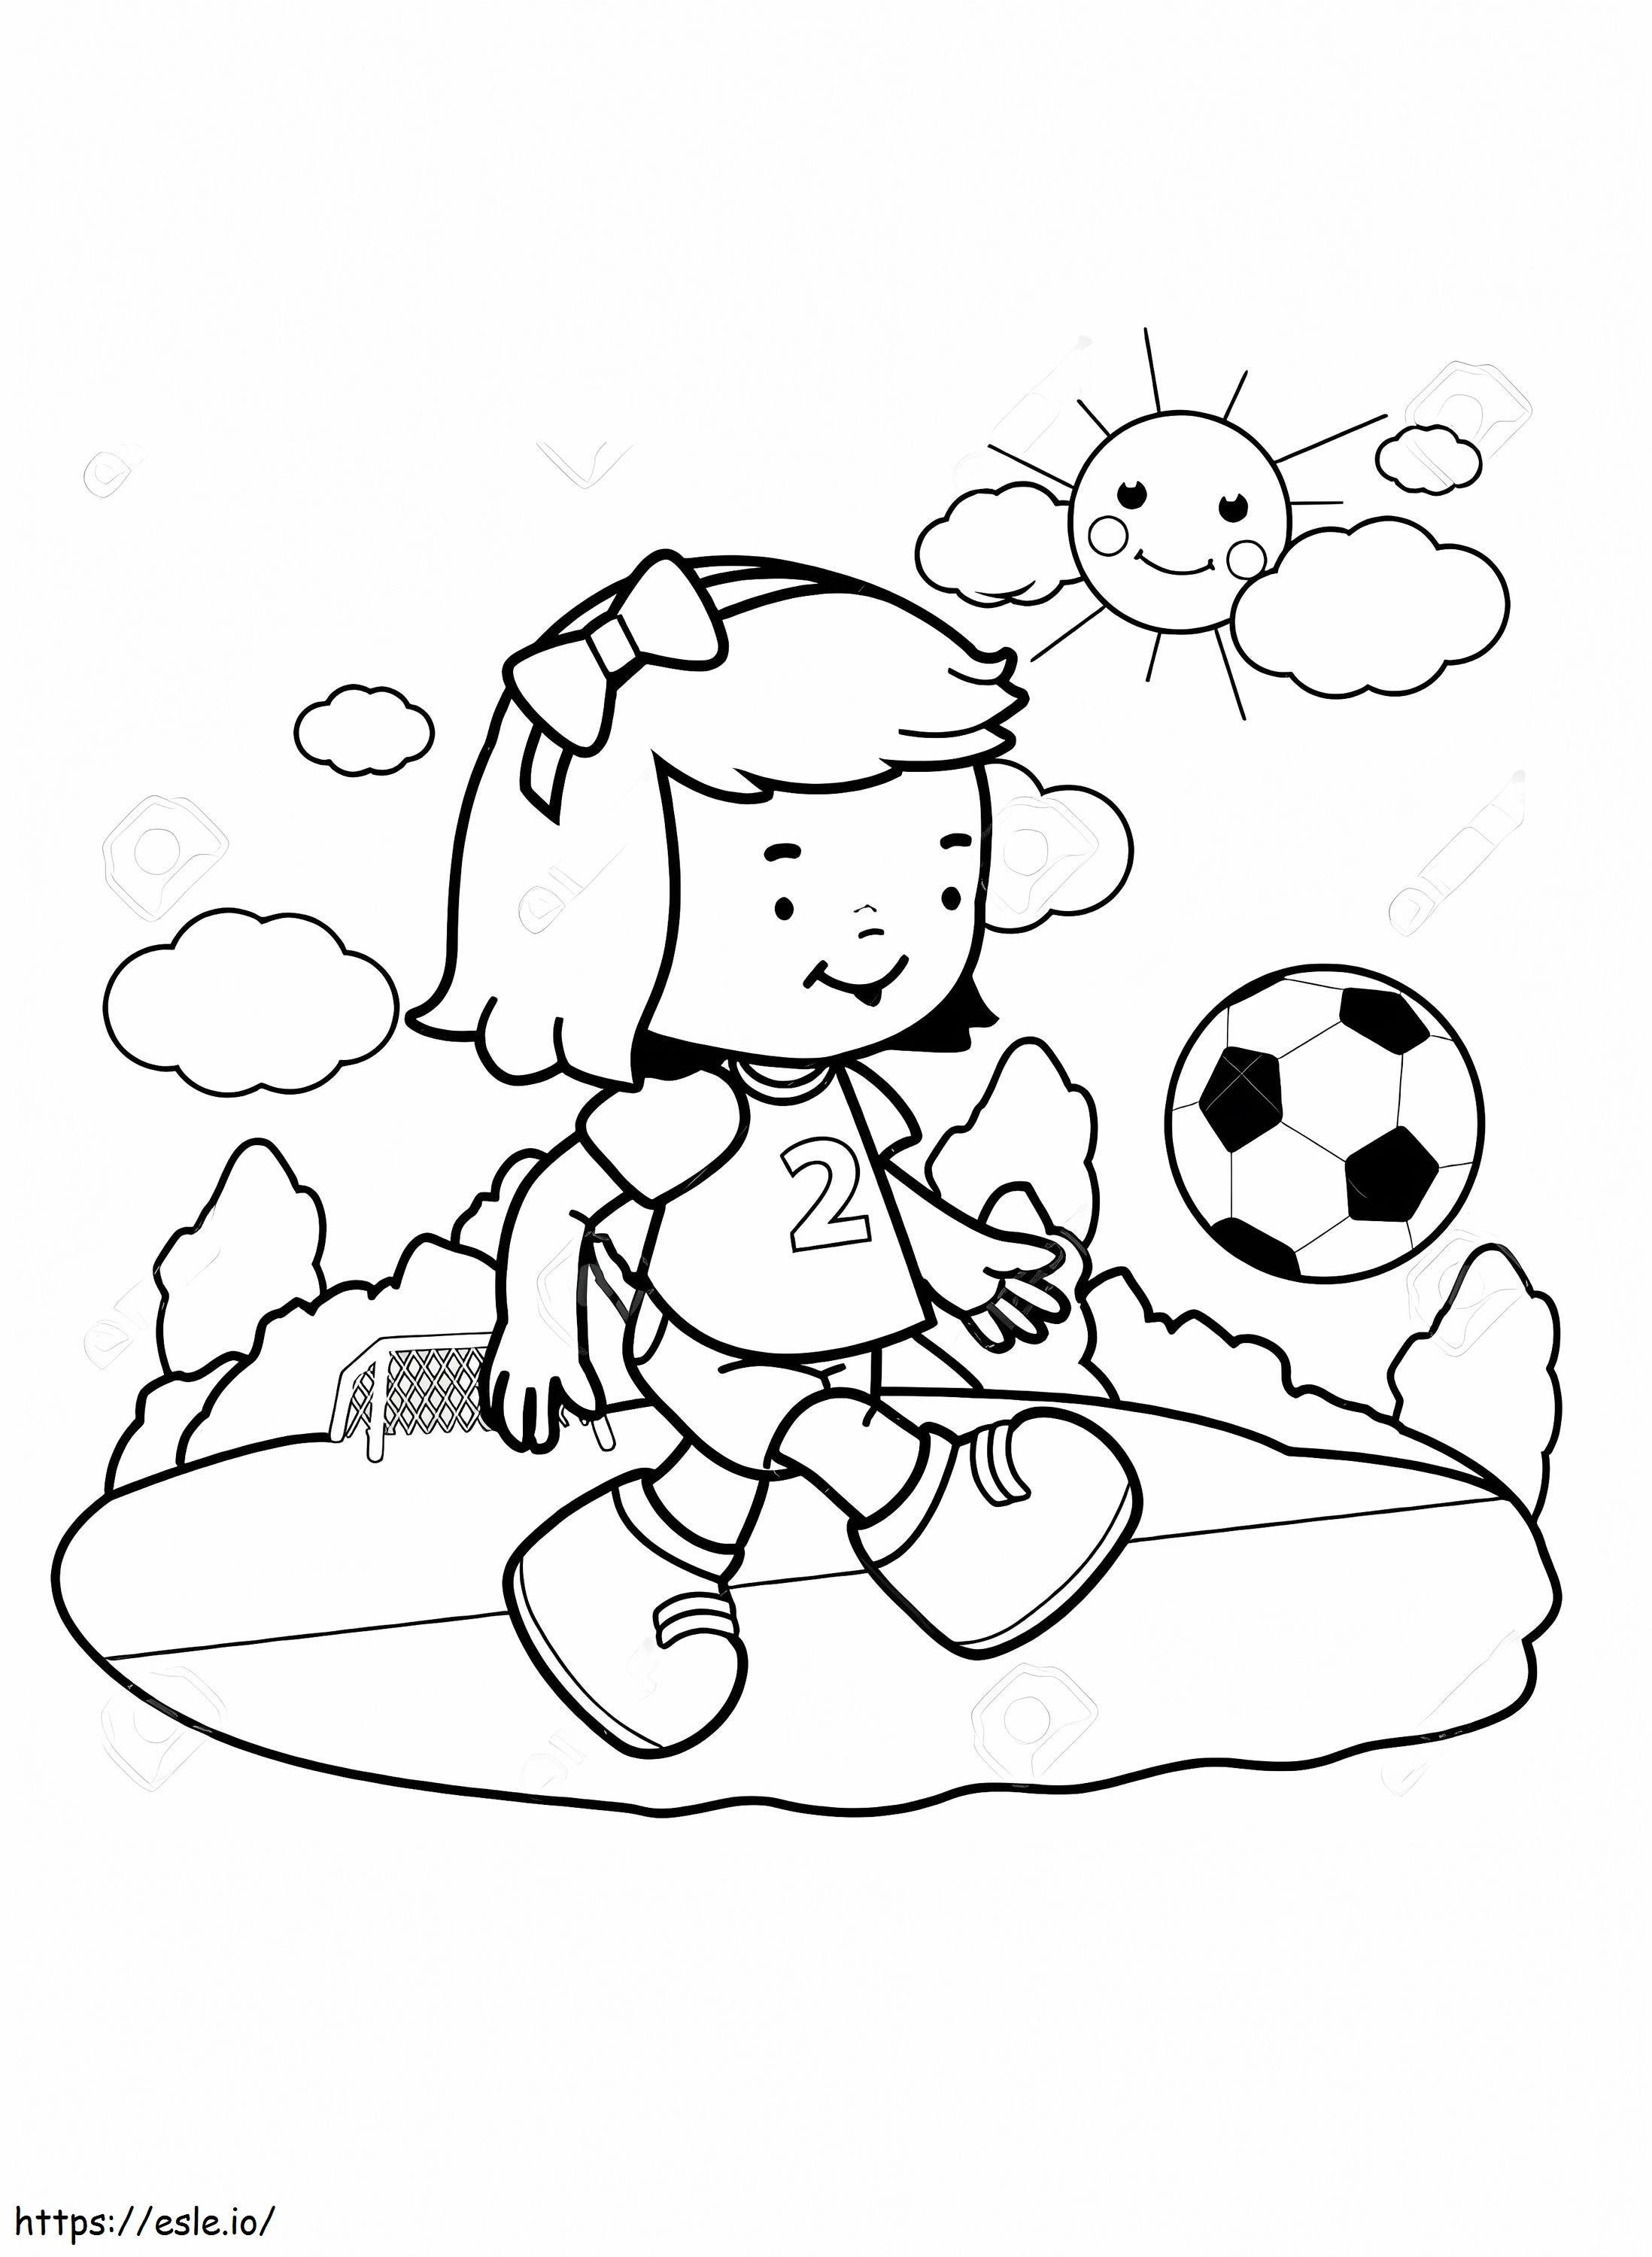 Fetiță care joacă fotbal de colorat